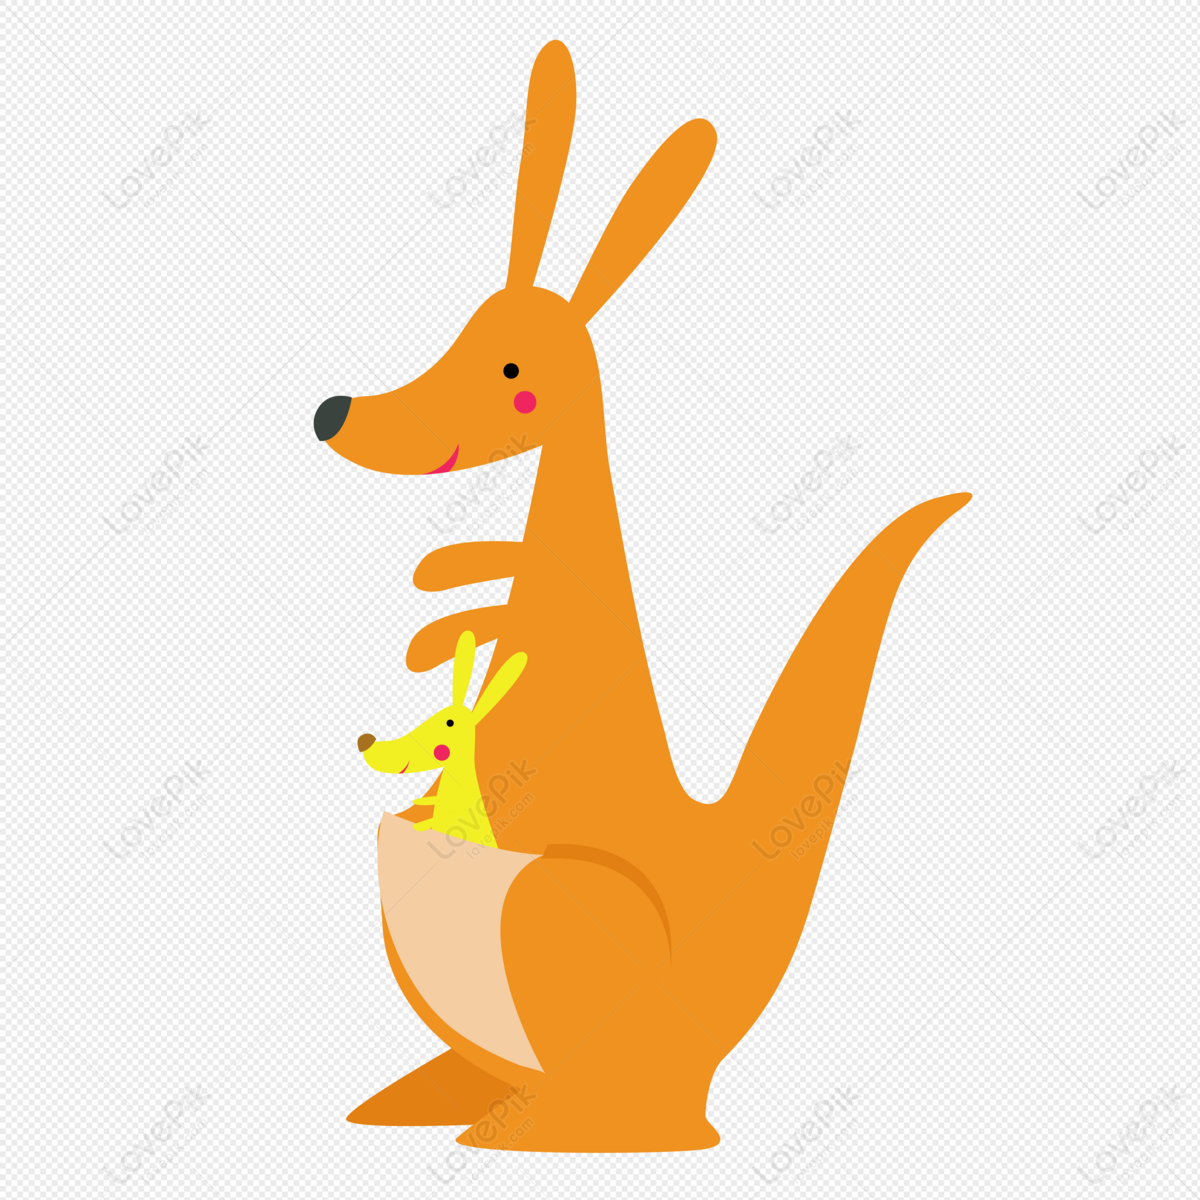 Kangaroo Animal Cartoon Kangaroo PNG Image And Clipart Image For Free  Download - Lovepik | 401422778